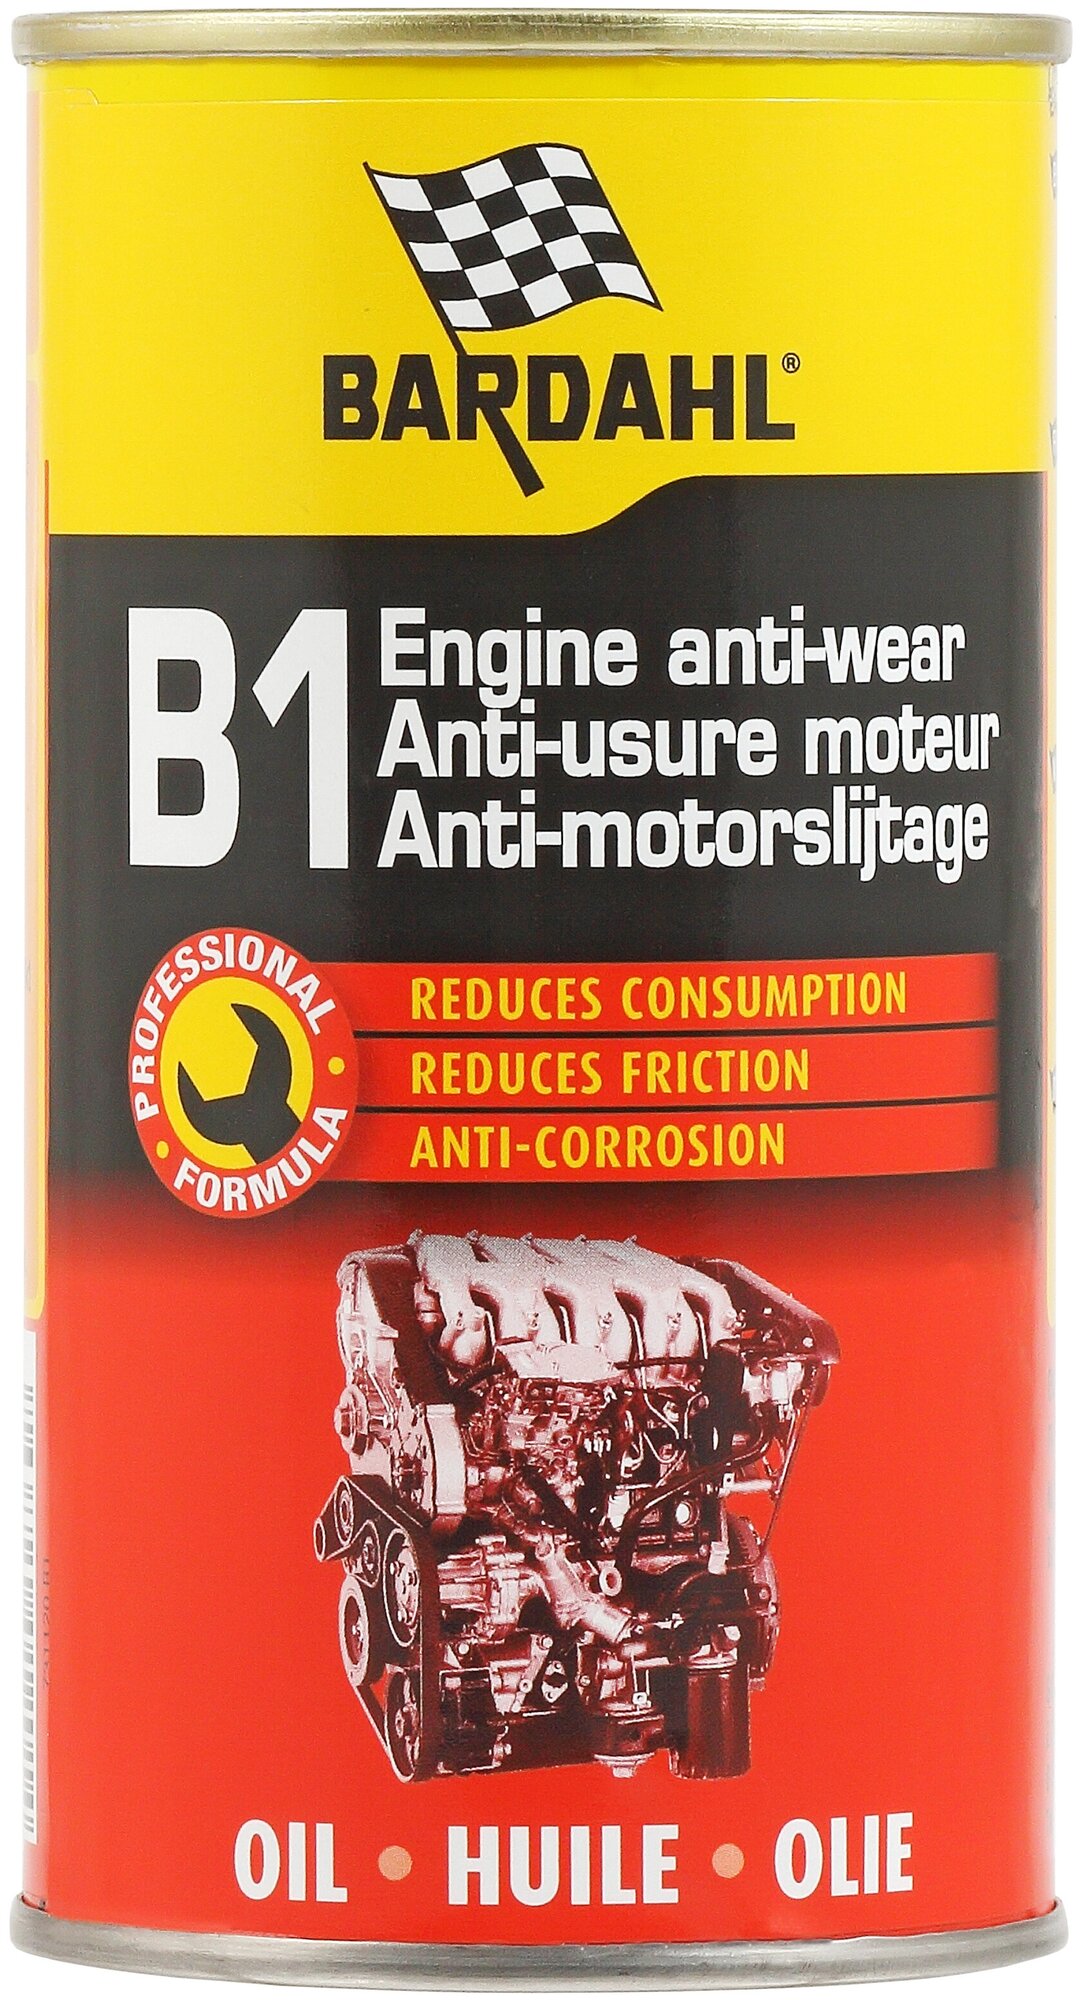 Bardahl B1 Engine anti-wear